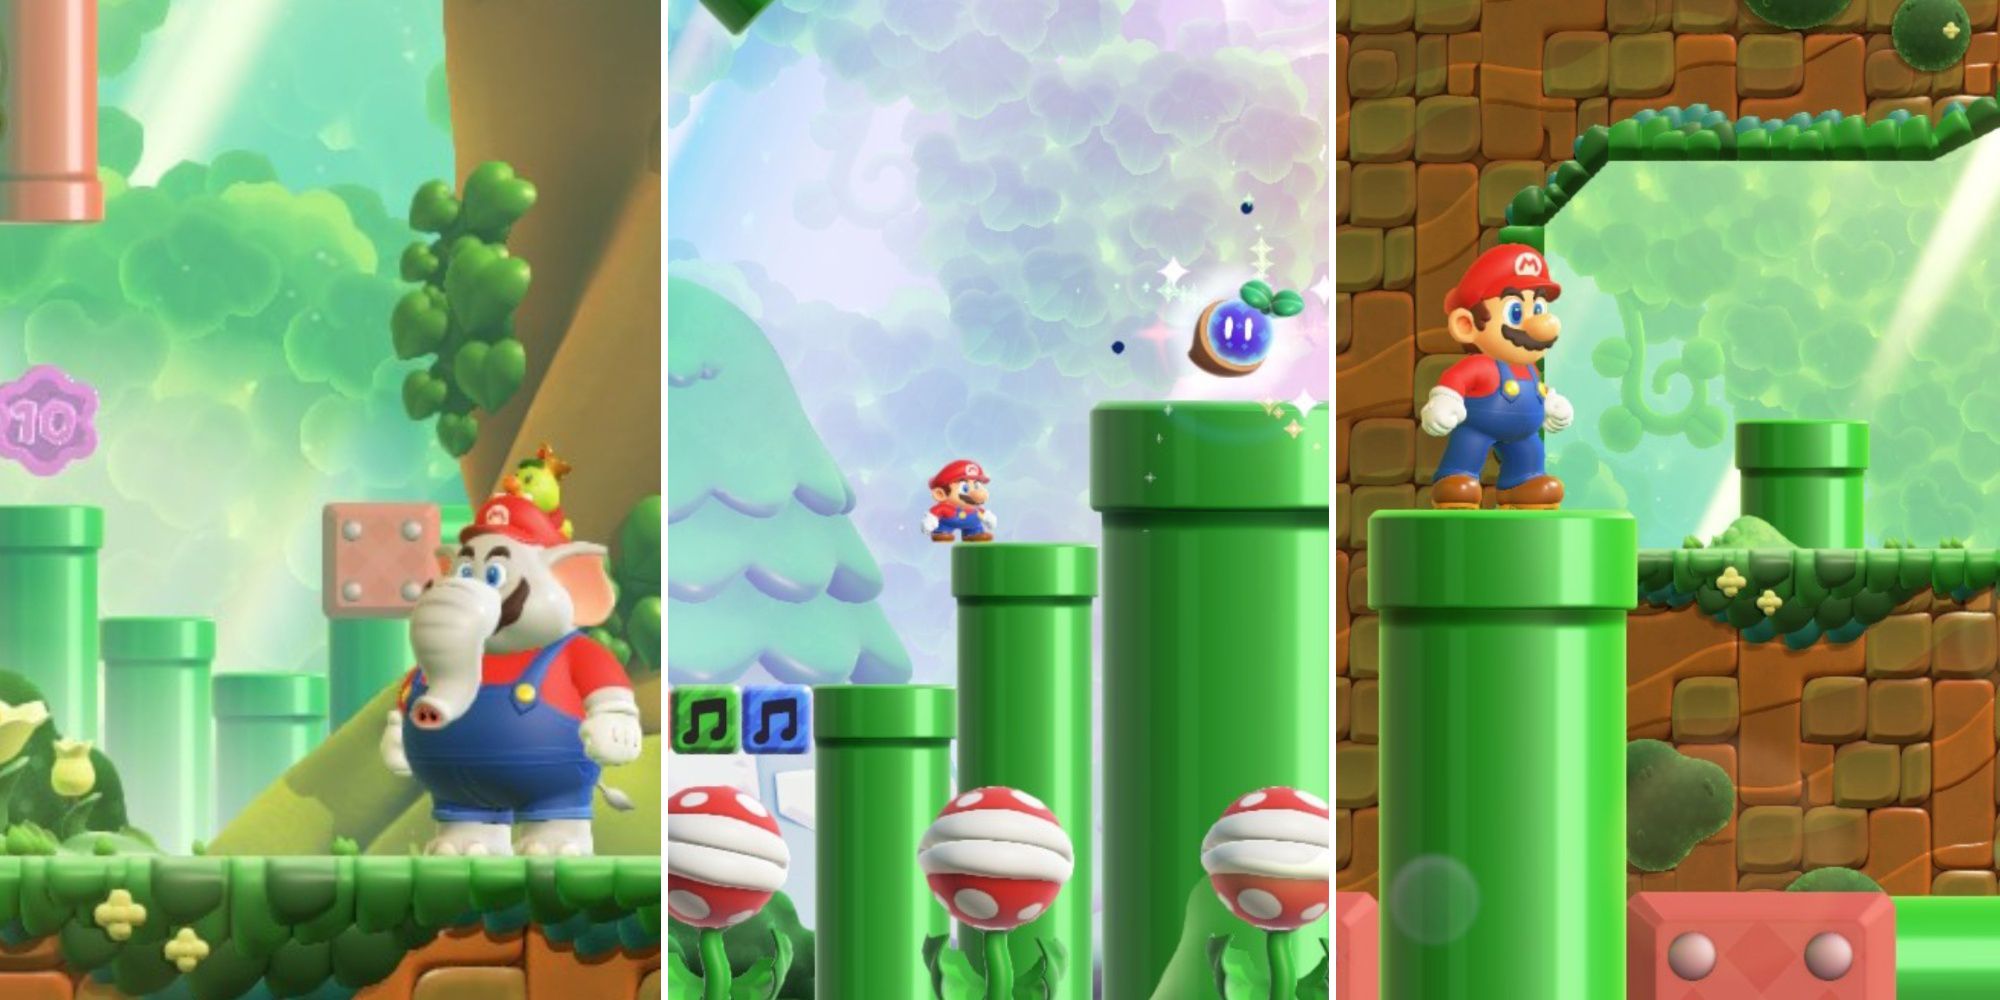 Una imagen de tres paneles de Super Mario Bros Wonder que muestra a Mario, el elefante, con una moneda morada al fondo, una semilla maravillosa en una pipa y a Mario en primer plano con una pipa al fondo.